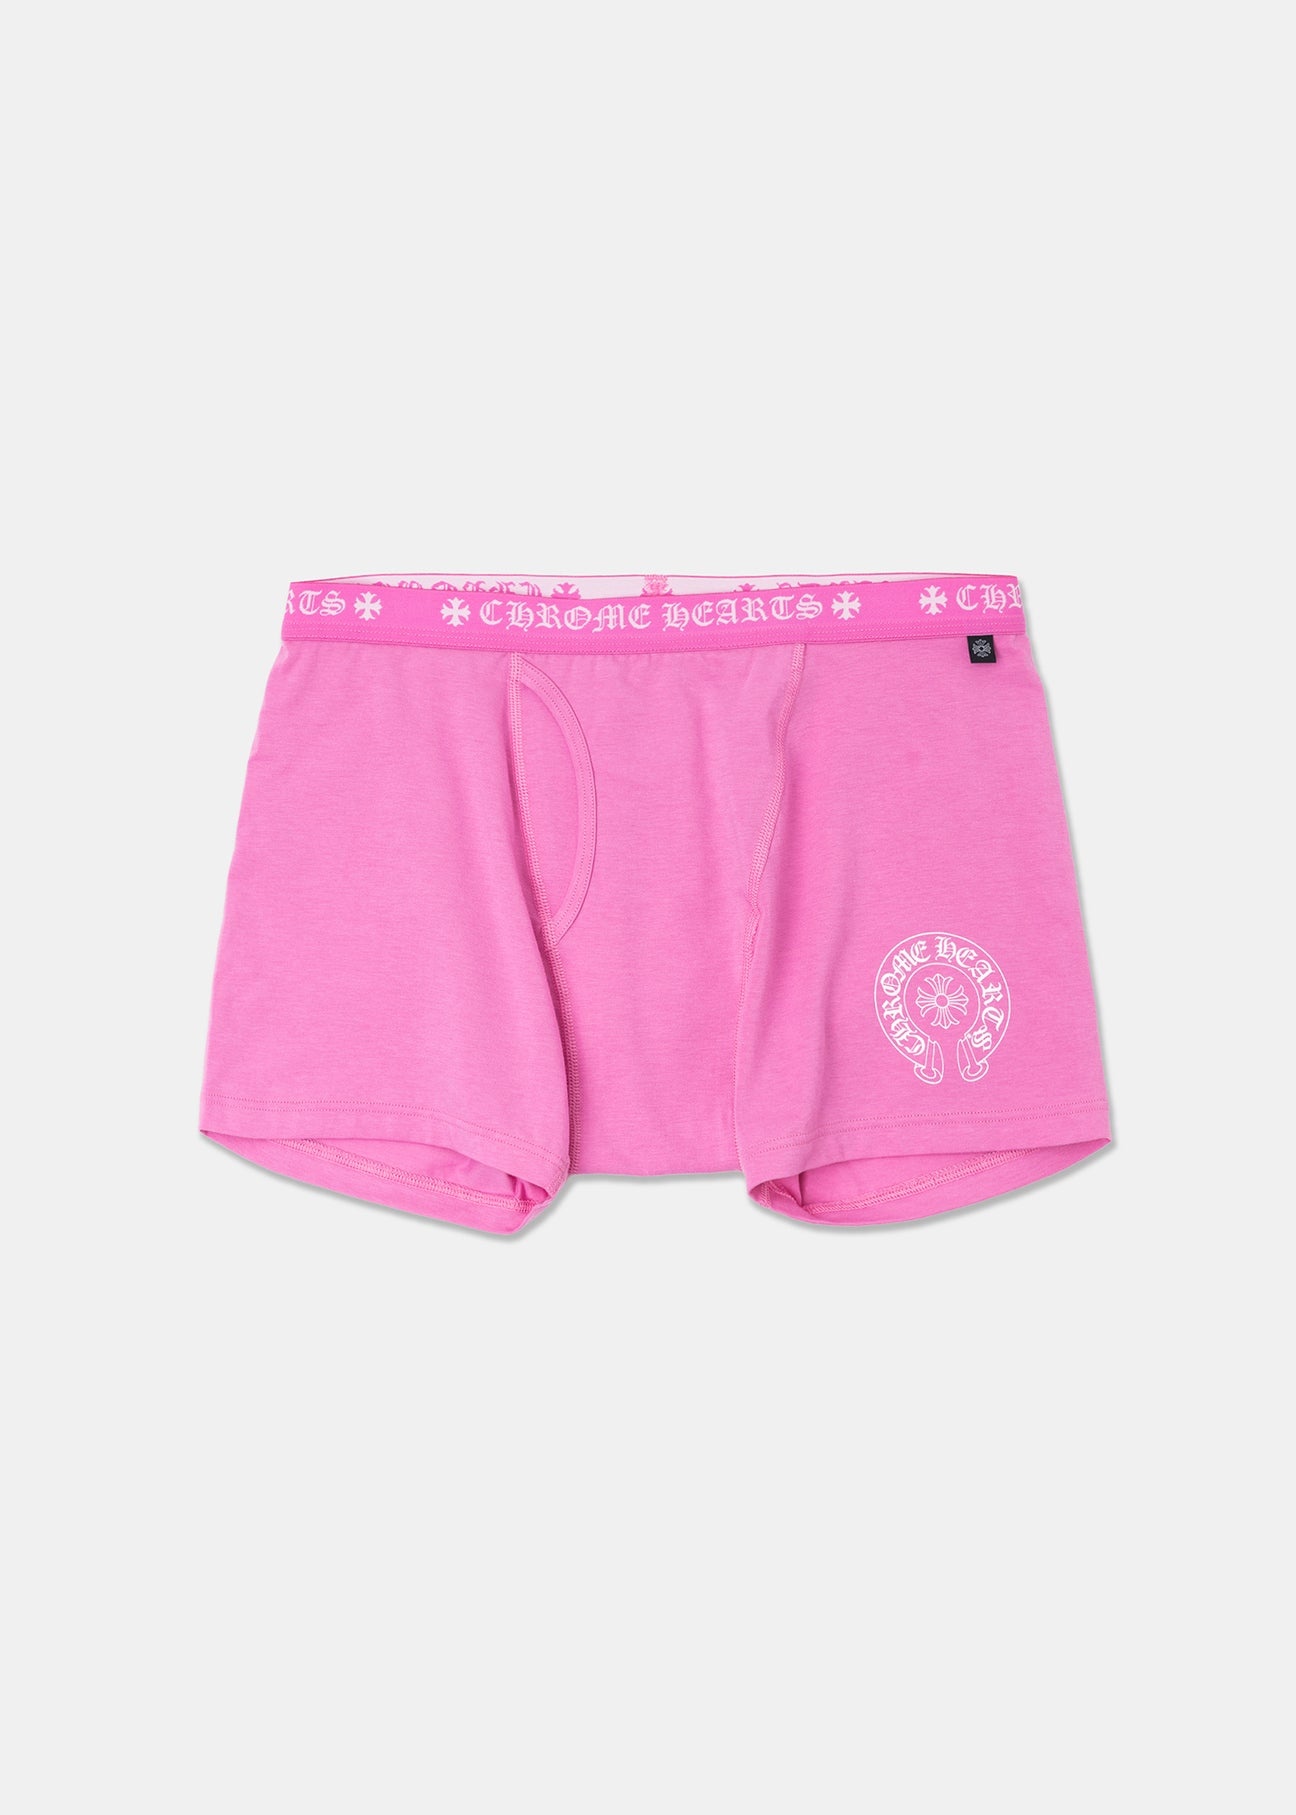 Pink Chrome Hearts Underwear - 1